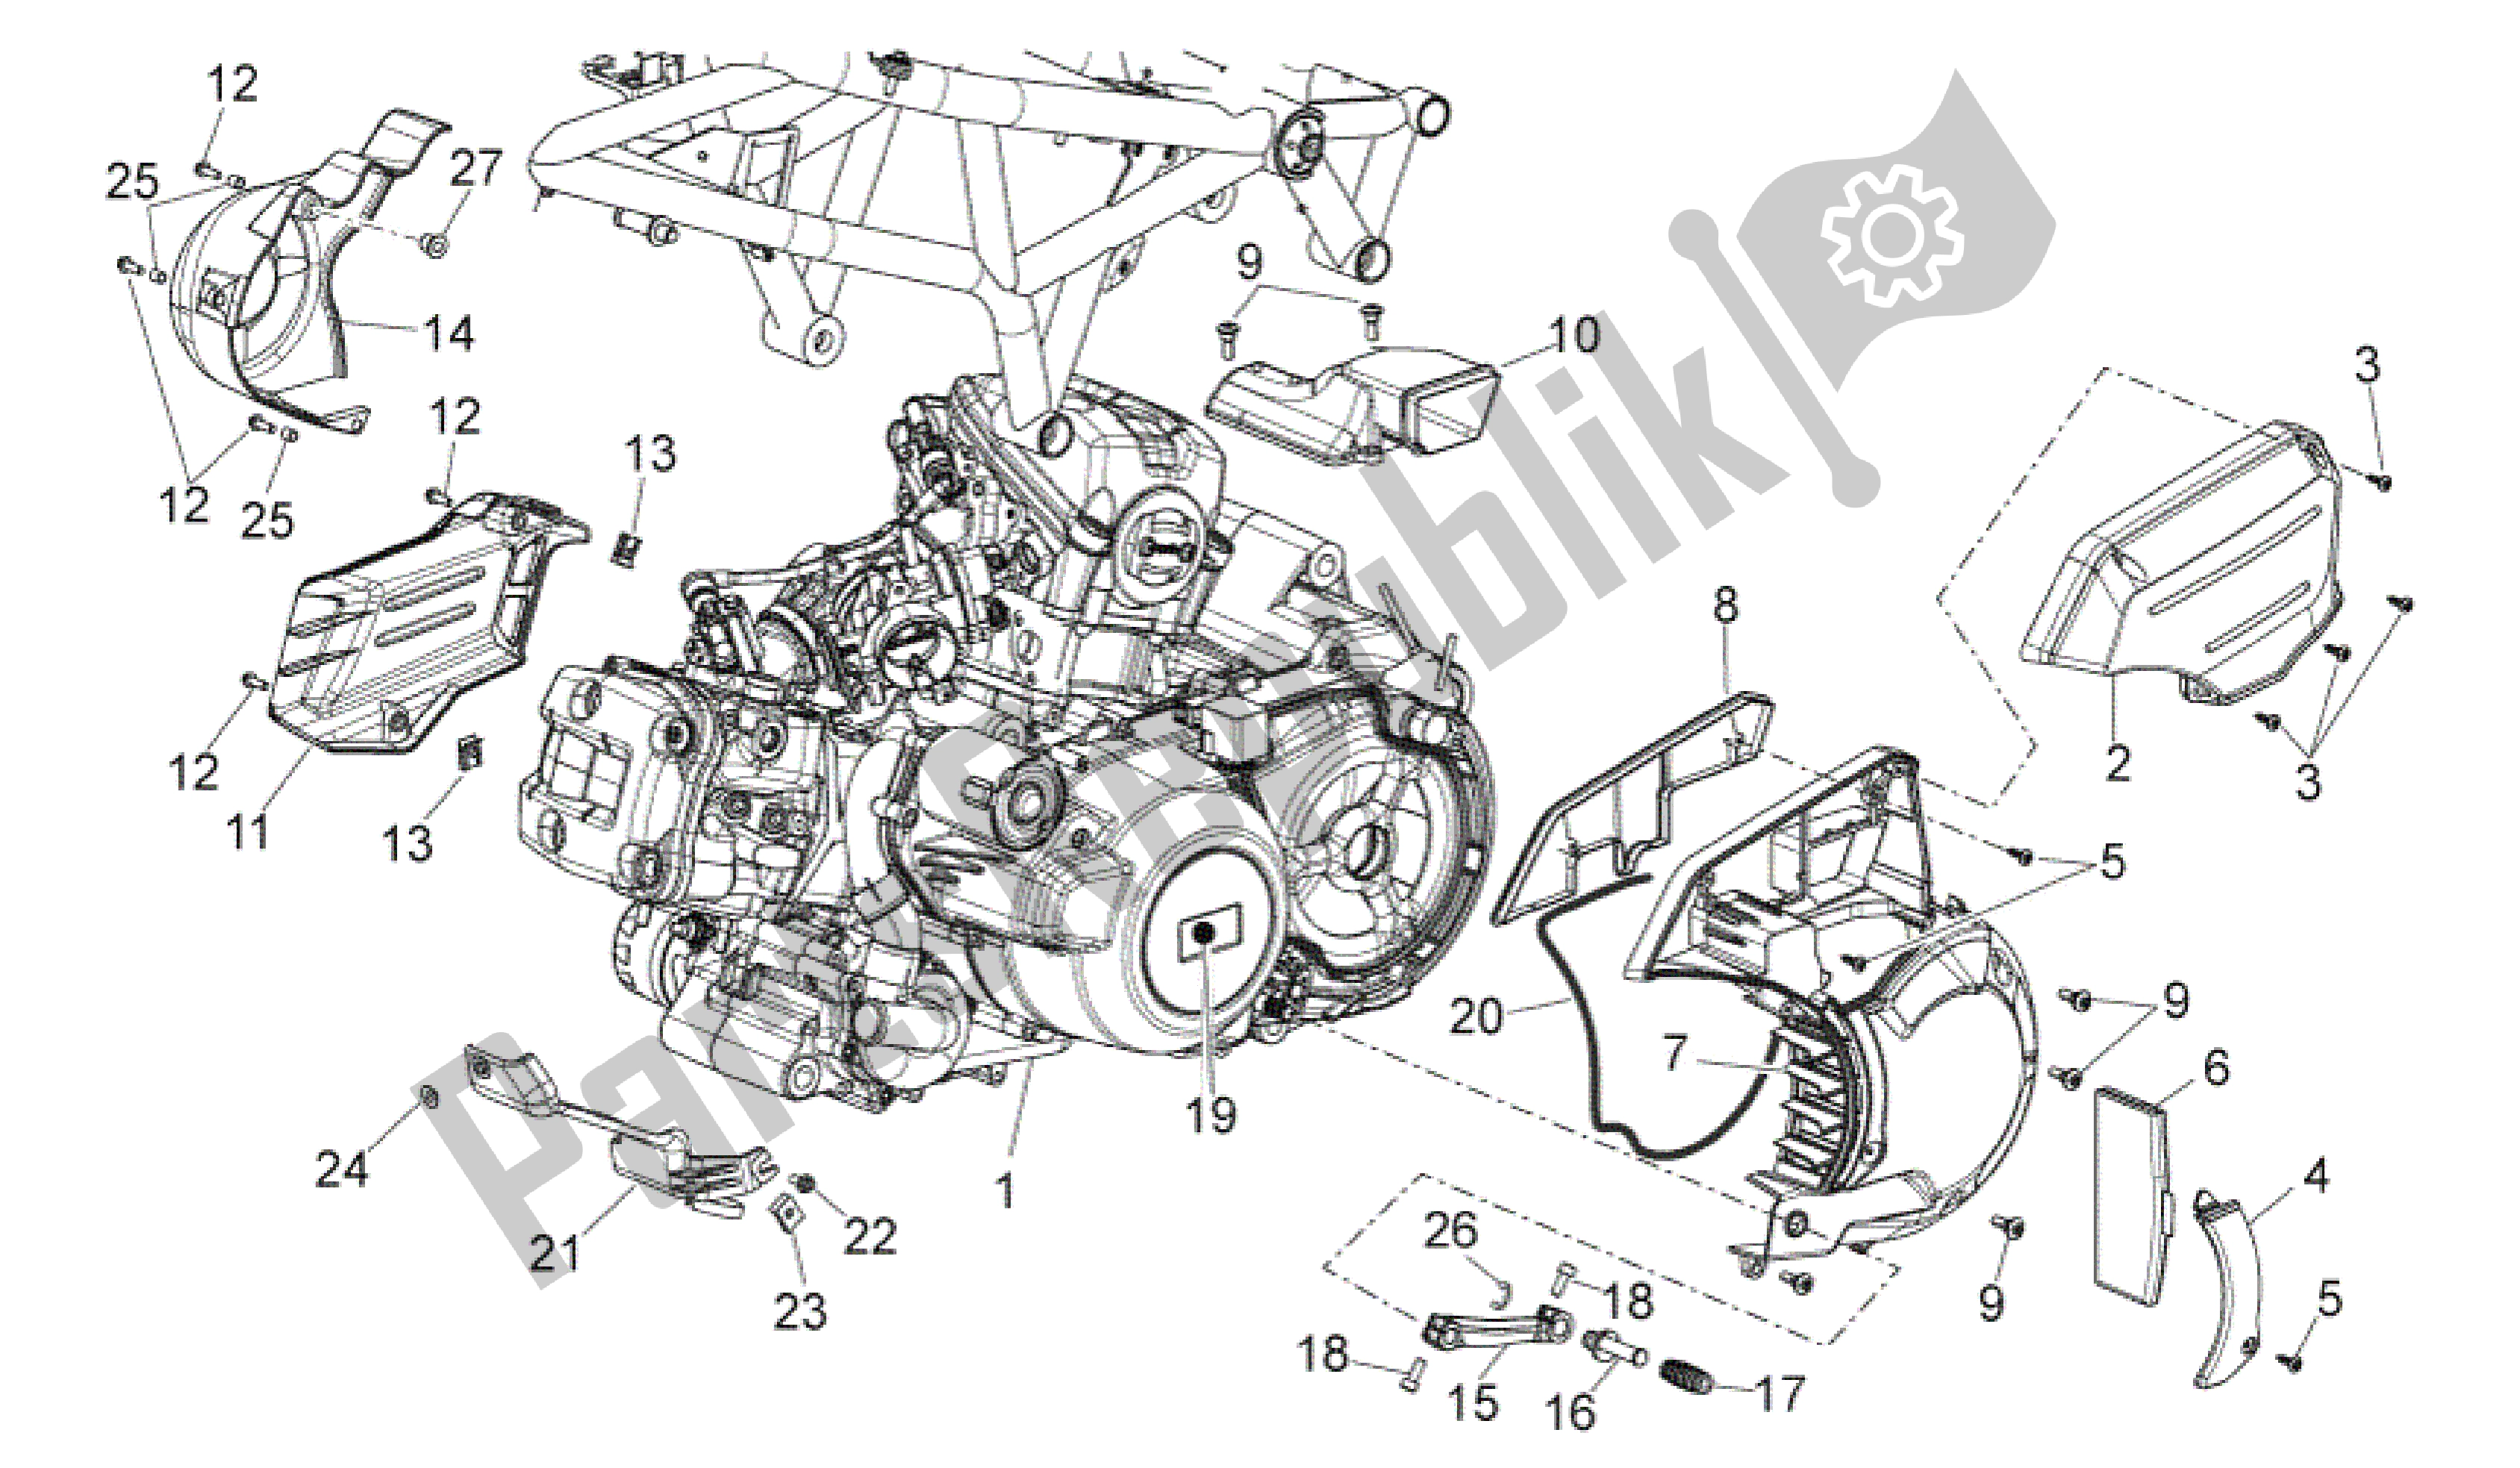 Alle onderdelen voor de Motor van de Aprilia Mana 850 2009 - 2011